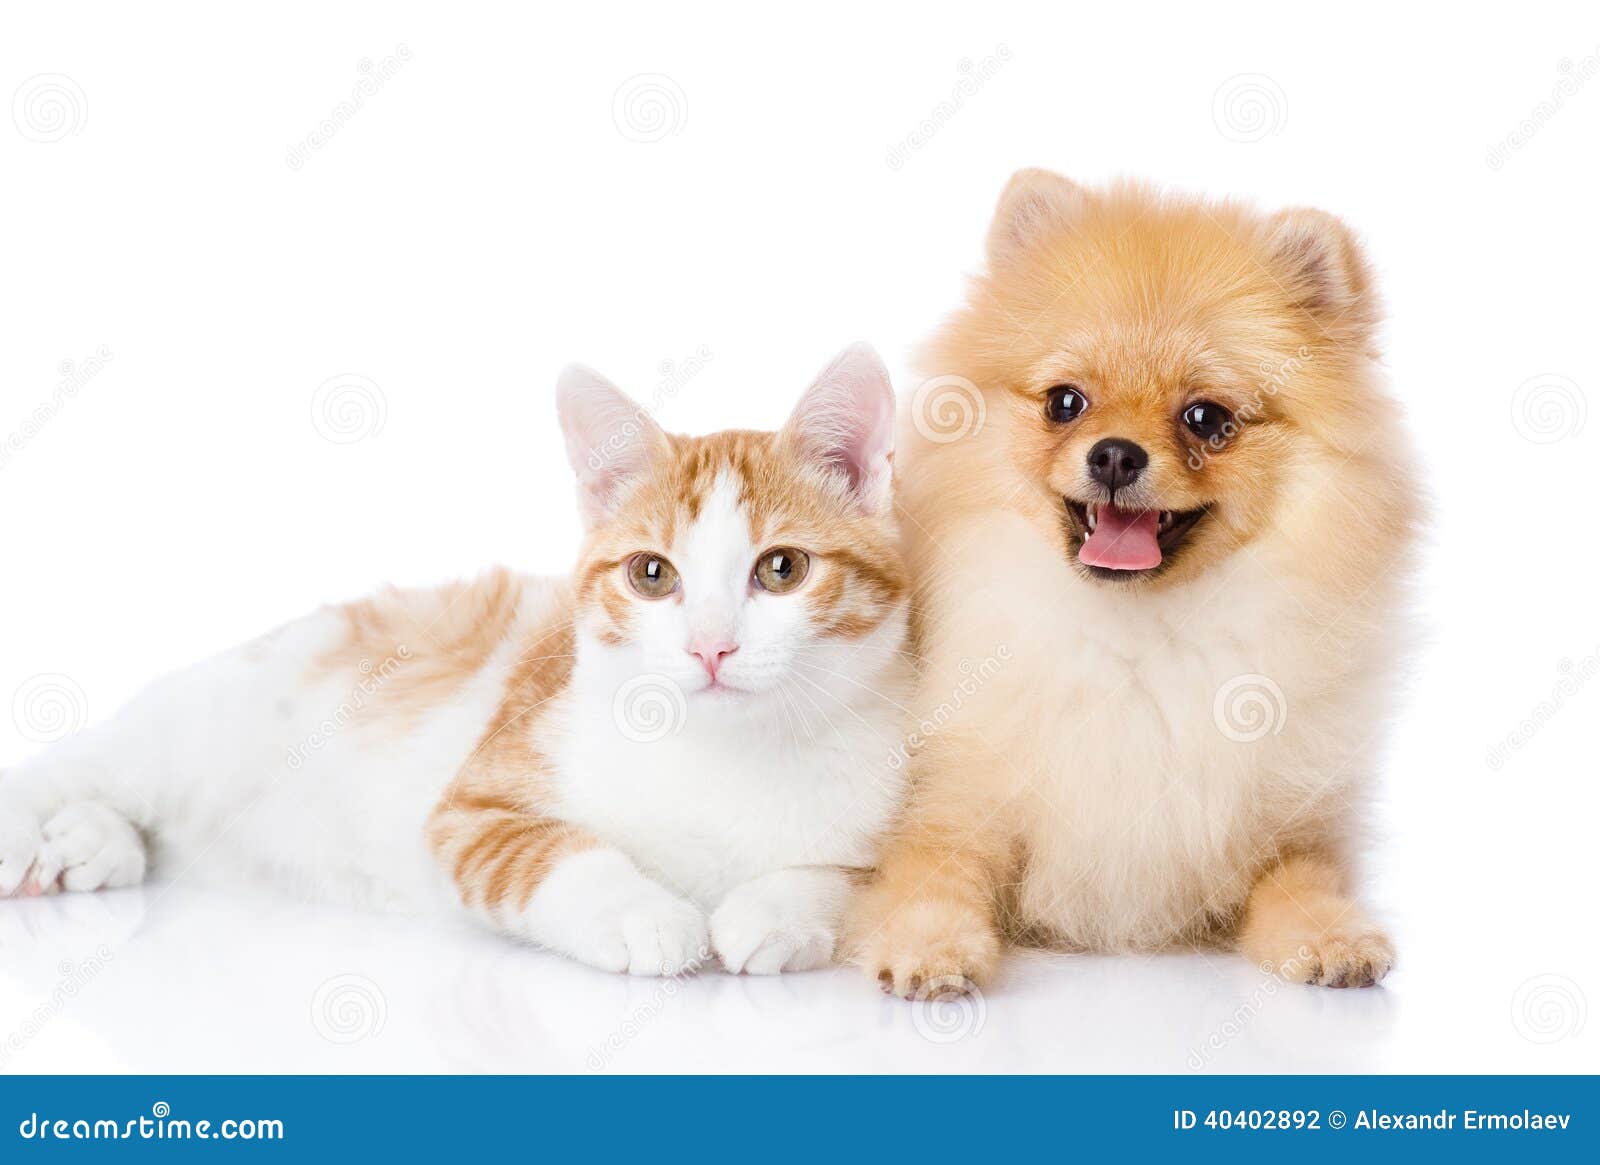 оранжевые кот и собака стоковое фото. изображение насчитывающей бело -  40402892